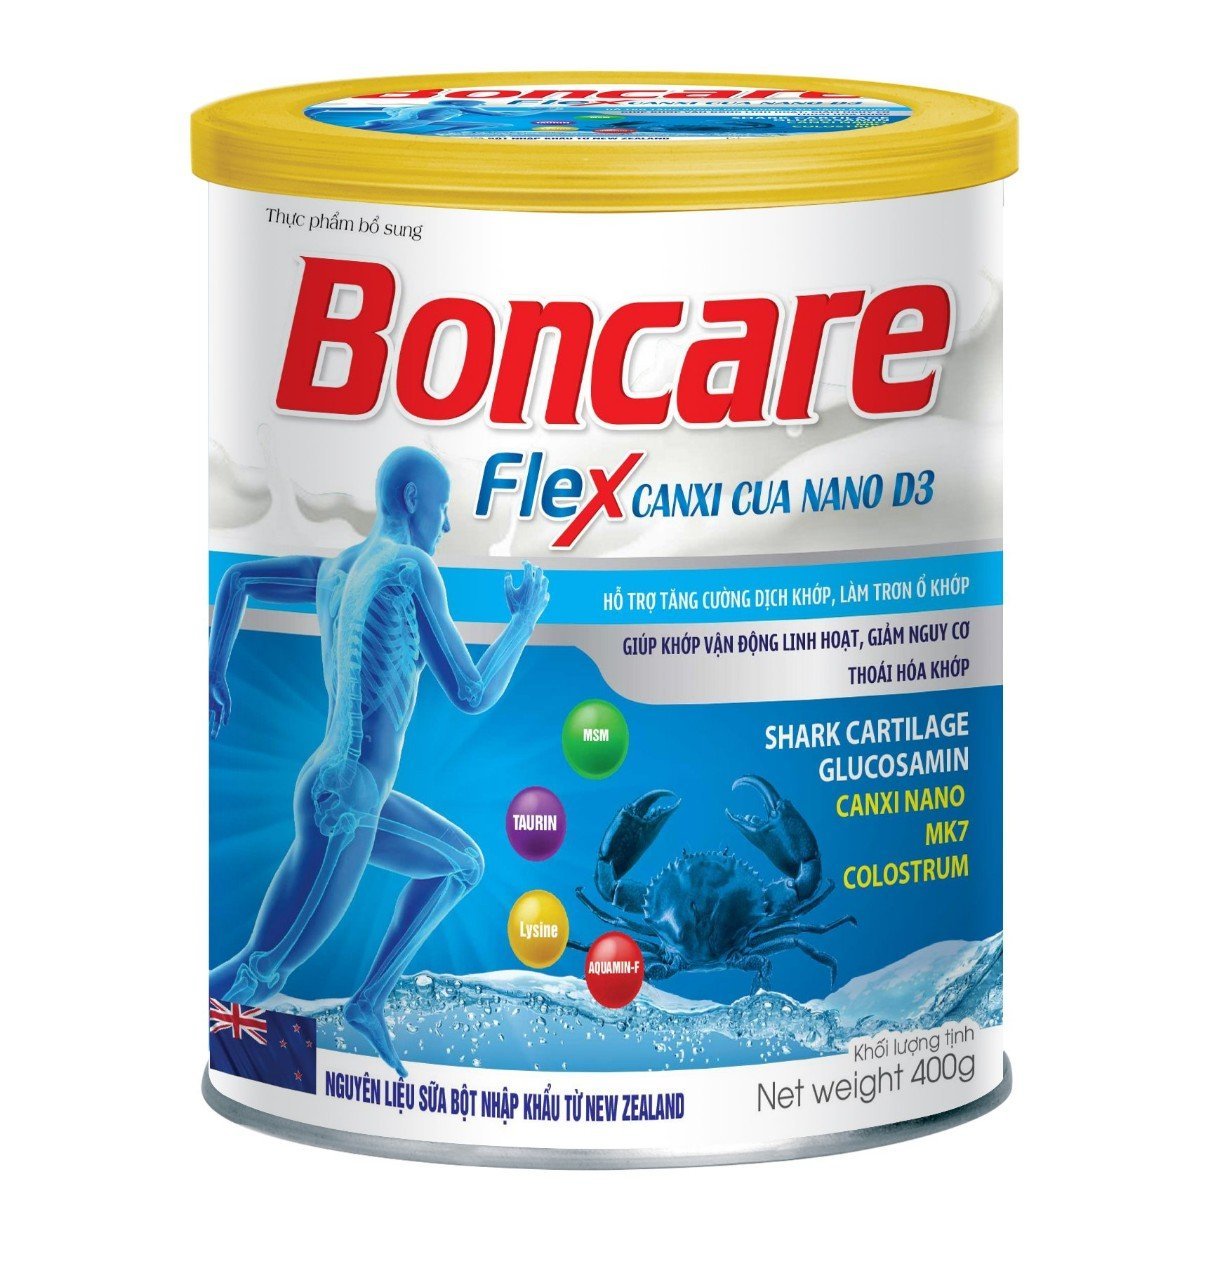 Sữa Bột Boncare Flex Canxi Cua Nano D3 với thành phần sụn vi cá mập, glucosamine, canxi nano MK7 Hỗ trợ tăng cường dịch khớp, làm trơn ổ khớp, giảm đau nhức xương khớp, giúp khớp vận động linh hoạt- hộp 400g - Nhất Tâm Pharma